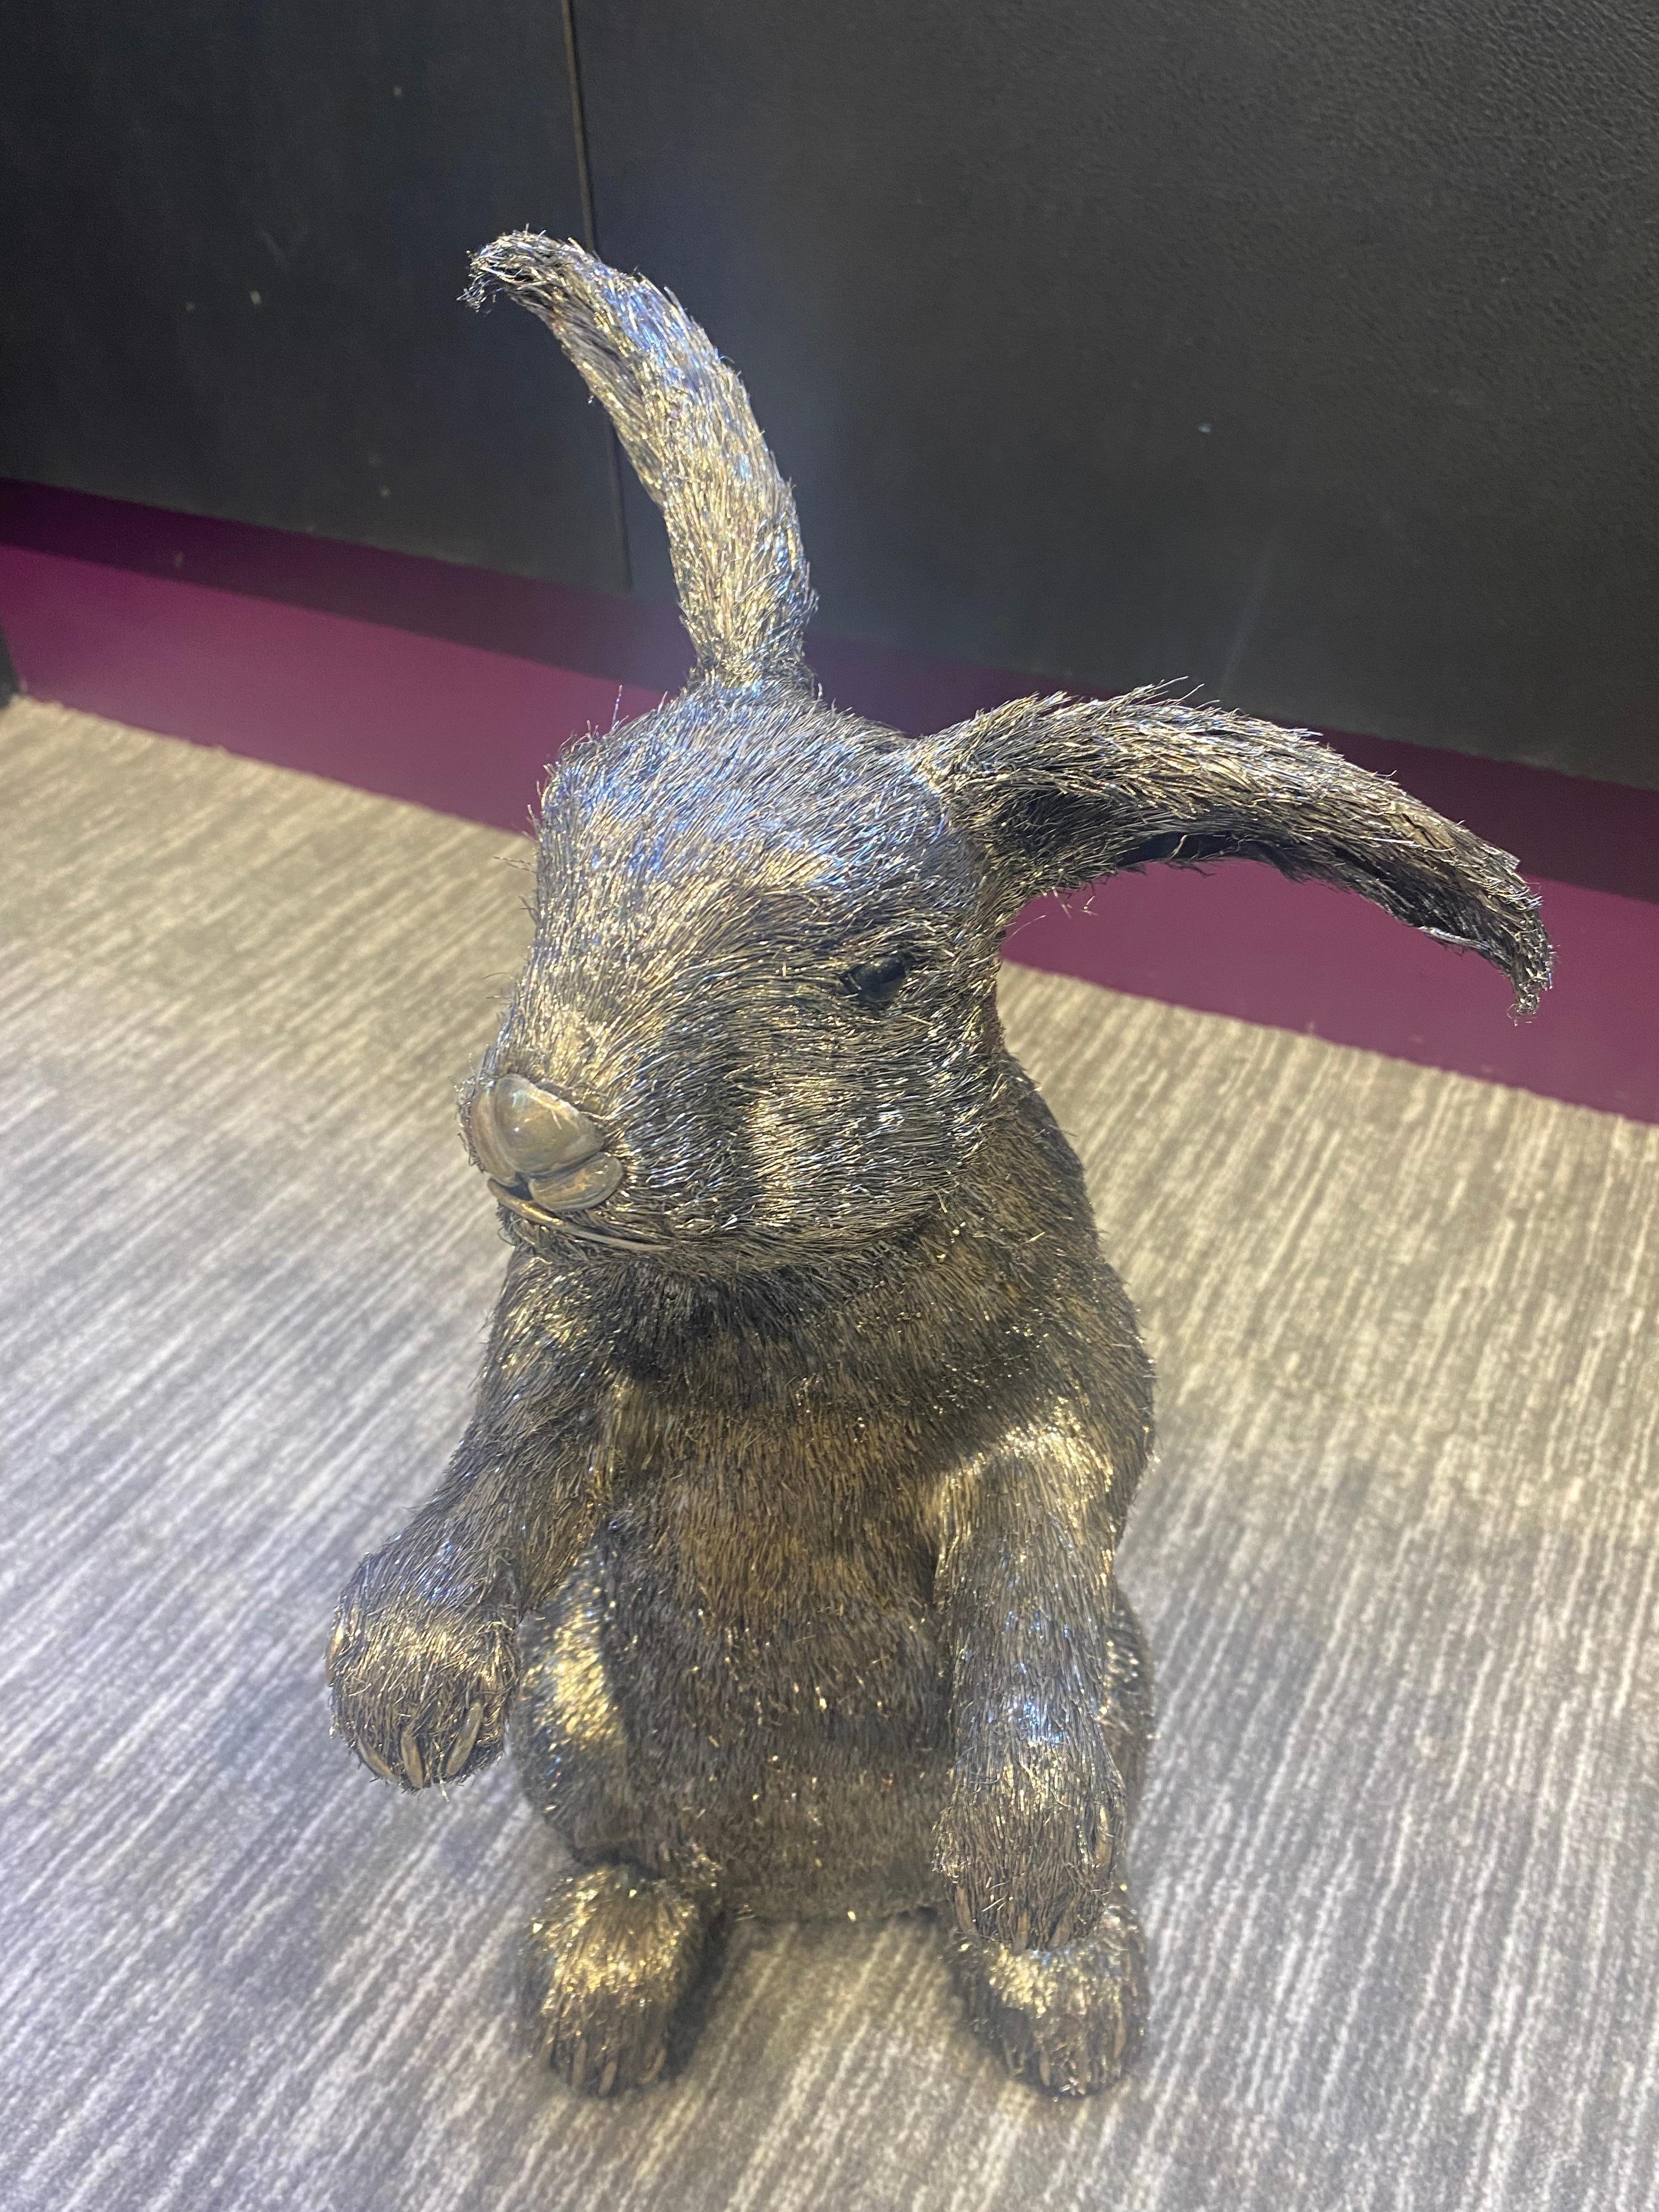 Mario Buccellati lebensgroßes silbernes Kaninchen. Ein lebensgroßes Silberkaninchen, das mit einer Technik gefertigt wurde, die als 